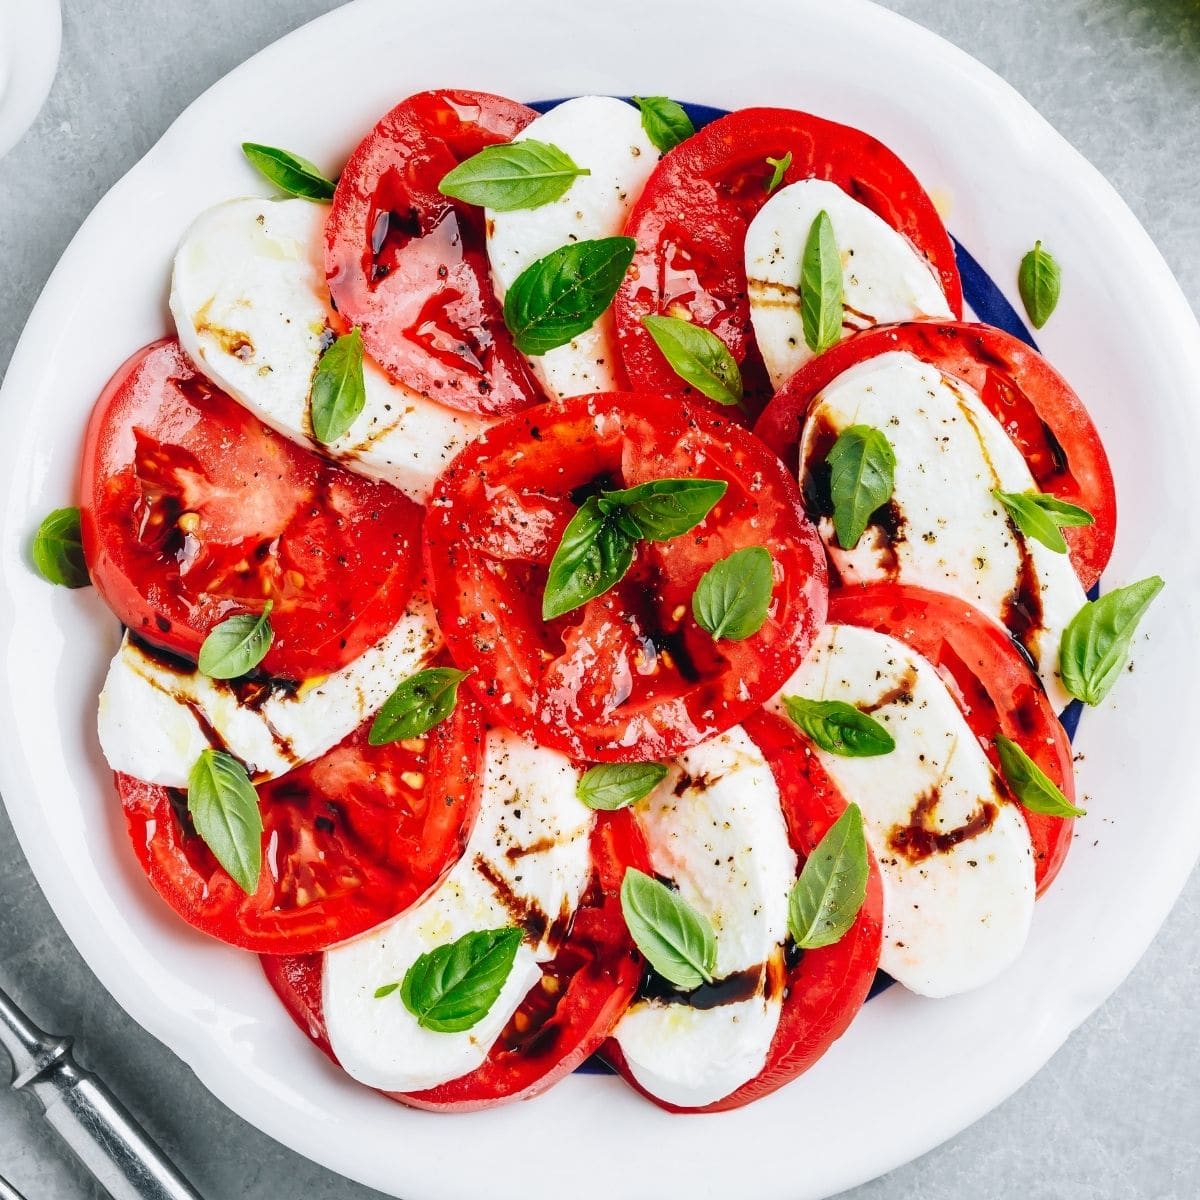 A melhor salada caprese servida enquanto os tomates, a mussarela e o manjericão são frescos e vibrantes.